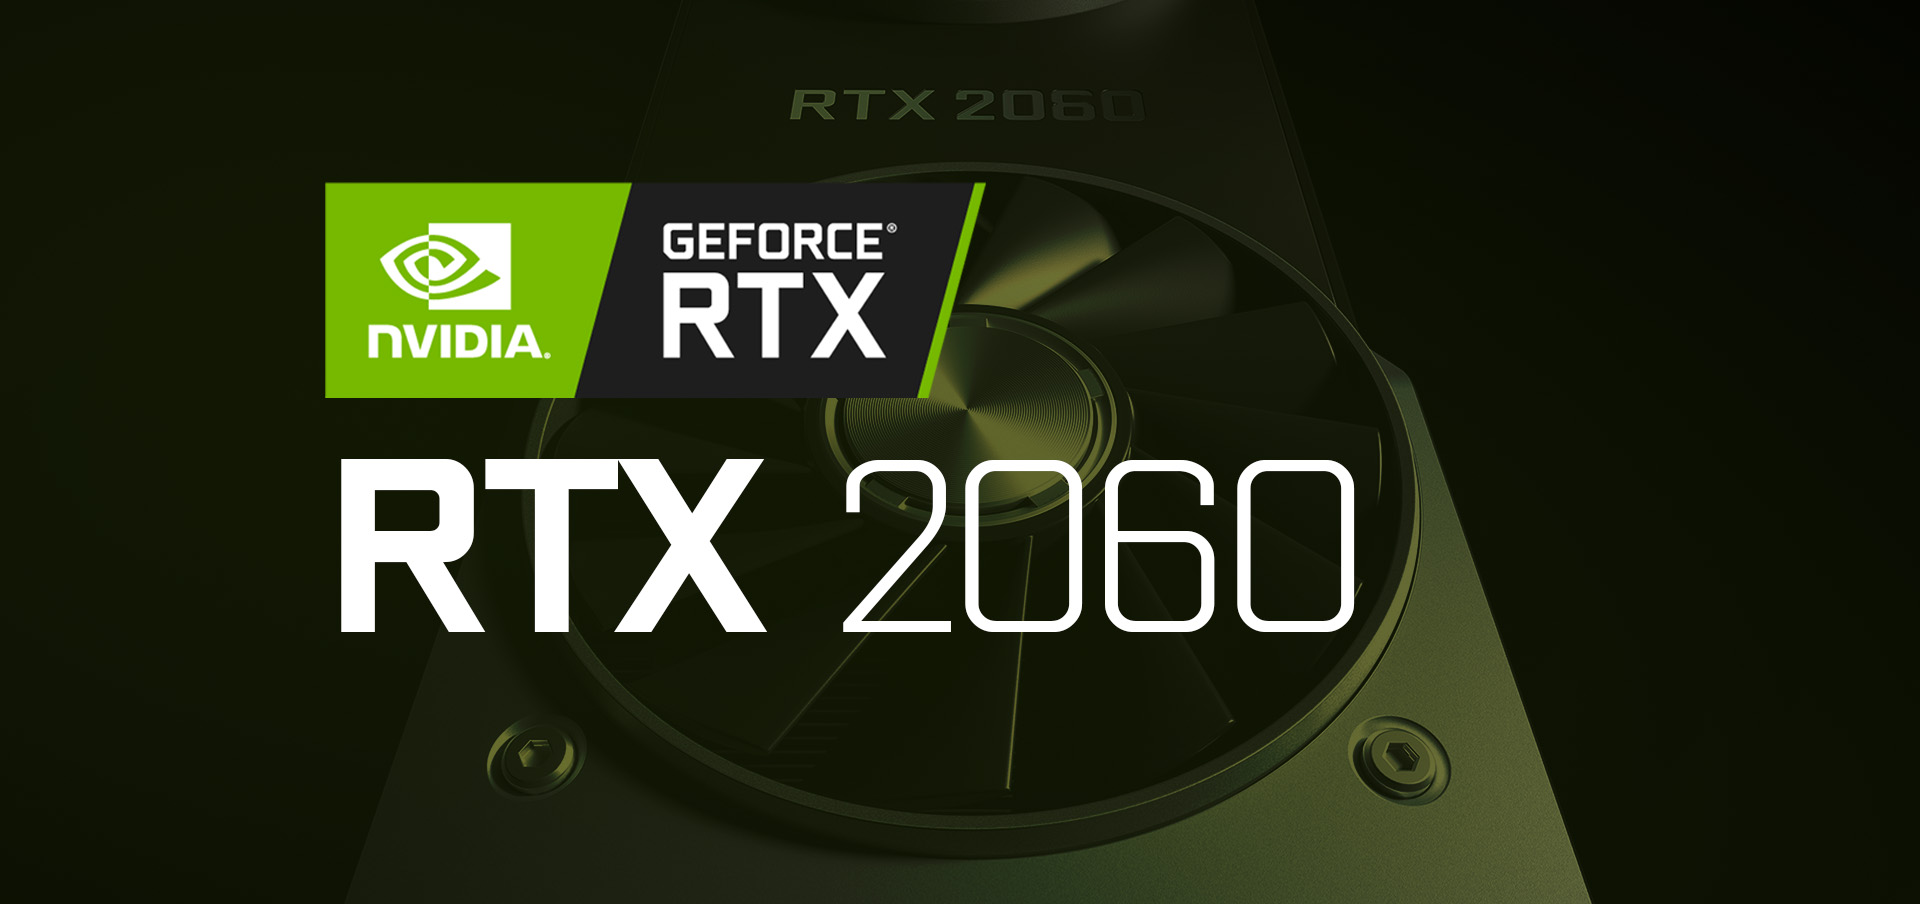 Kanada uus RTX 2060 noteerimine näitab 6GB VRAM-i variandi hinnakujundust